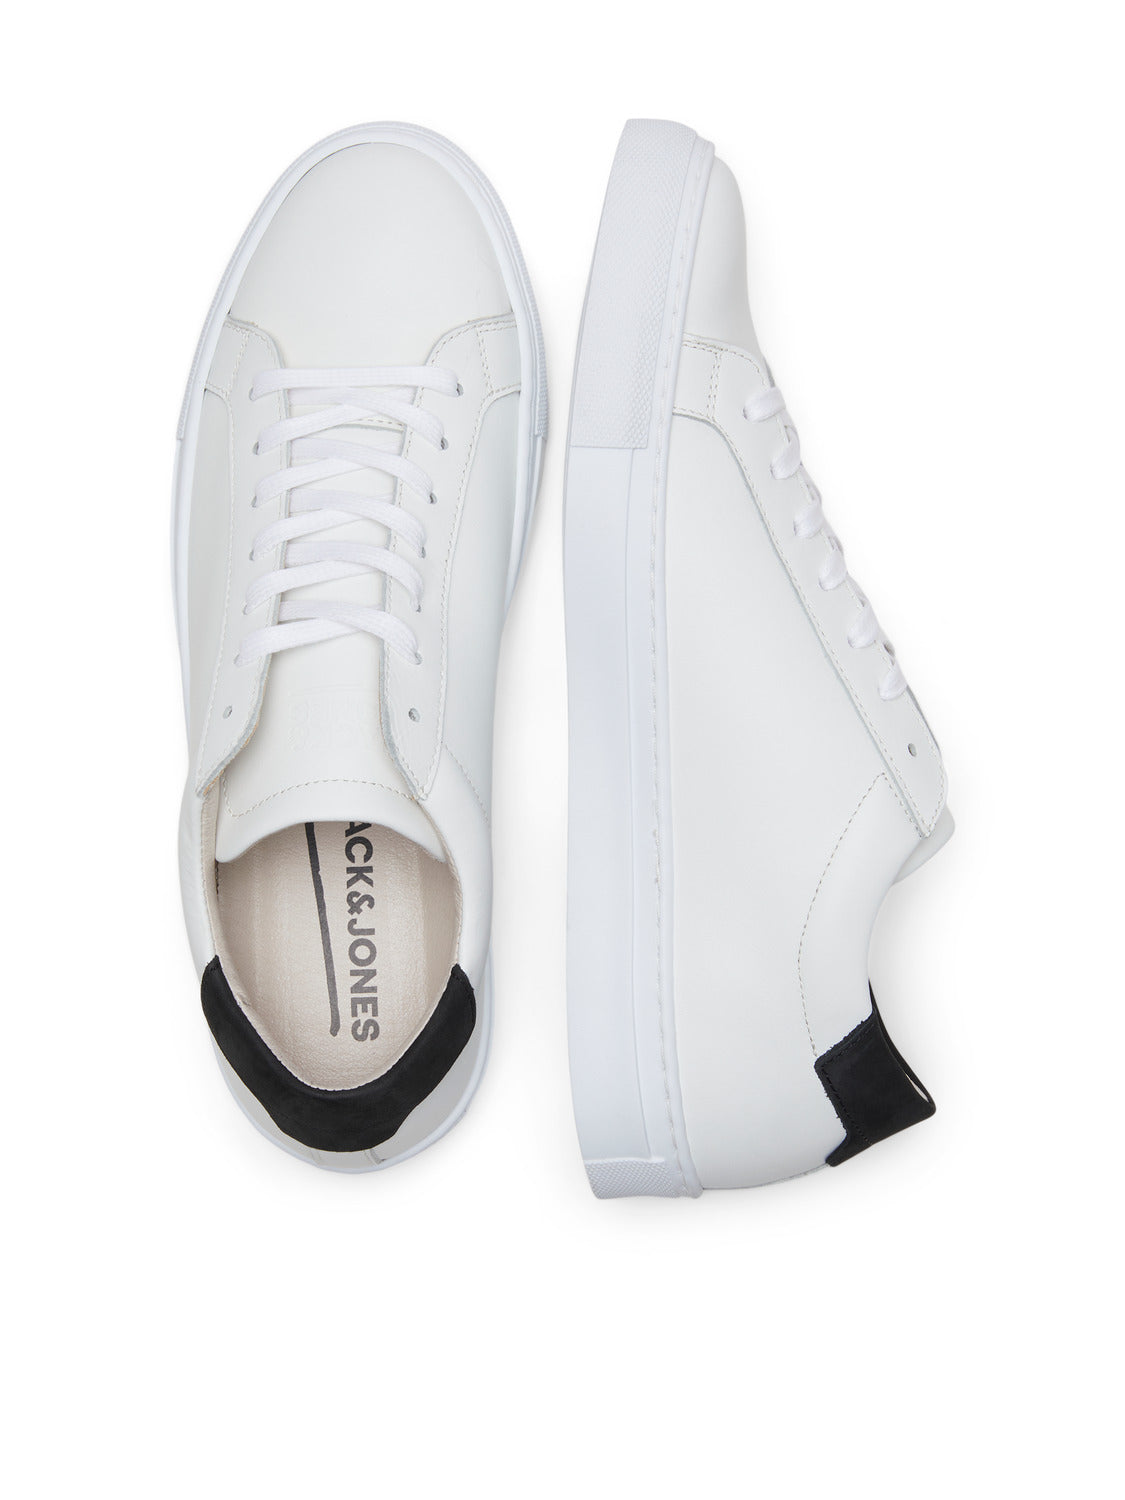 JFWCOREY Shoes - White